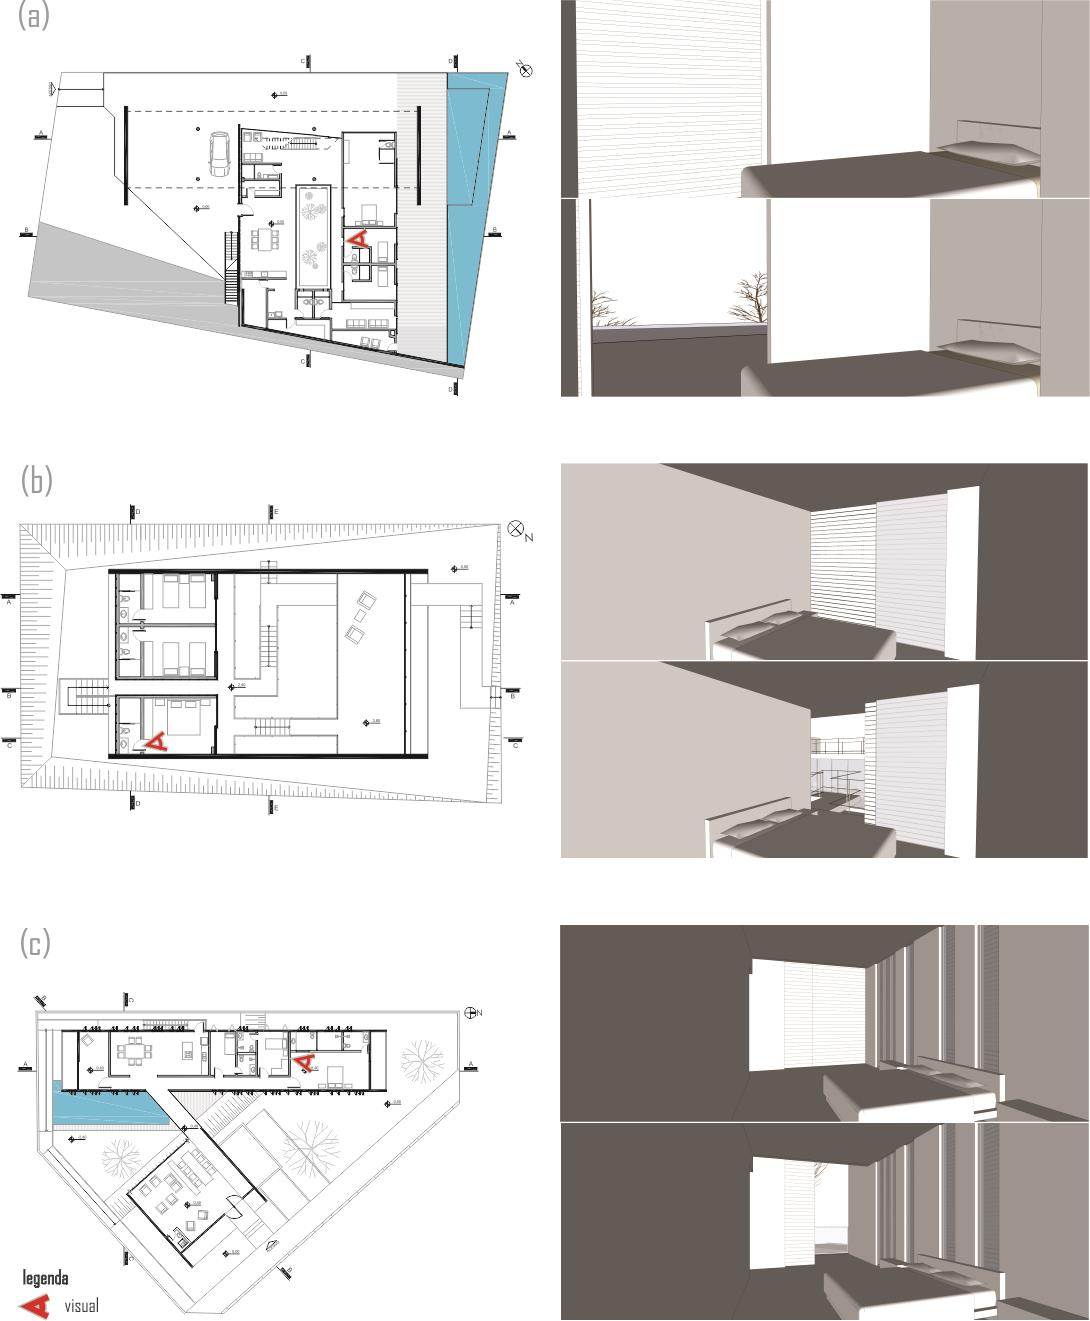 Nos dormitórios, a experiência é primordialmente estática, causada pela geometria regular dos ambientes.